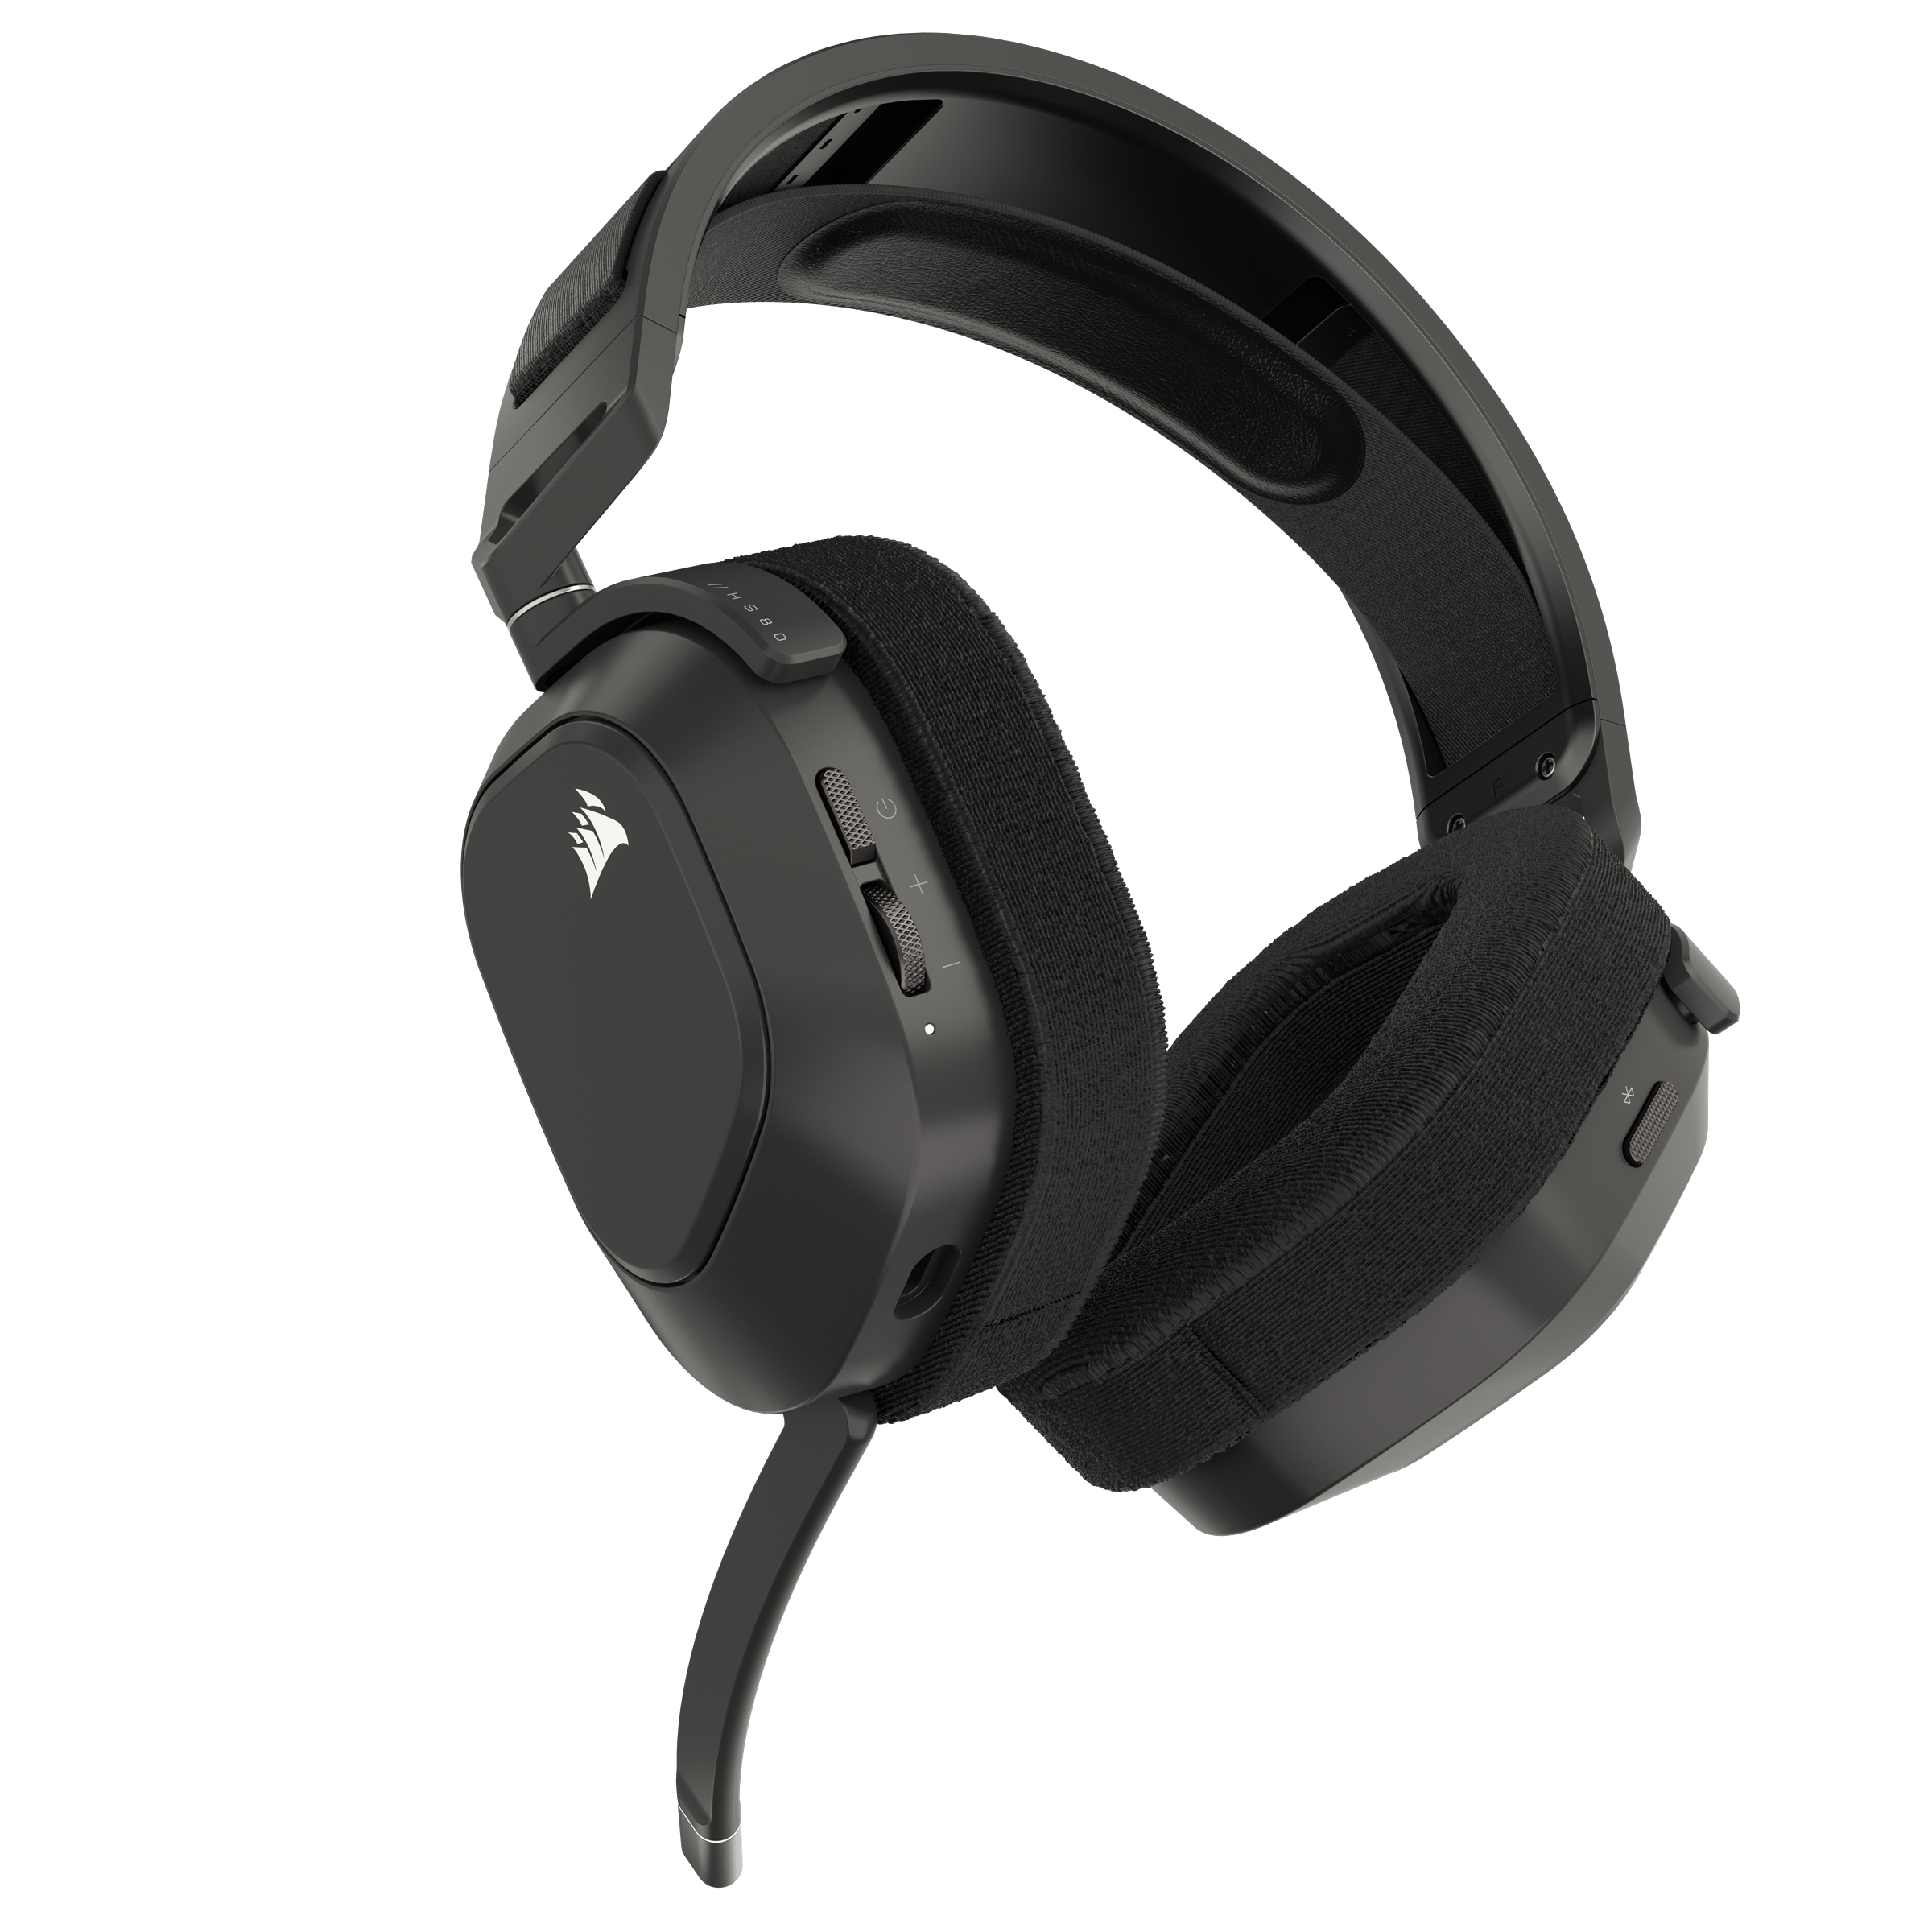 CORSAIR HS80 Max, Over-ear Gaming Stahlgrau Headset Bluetooth